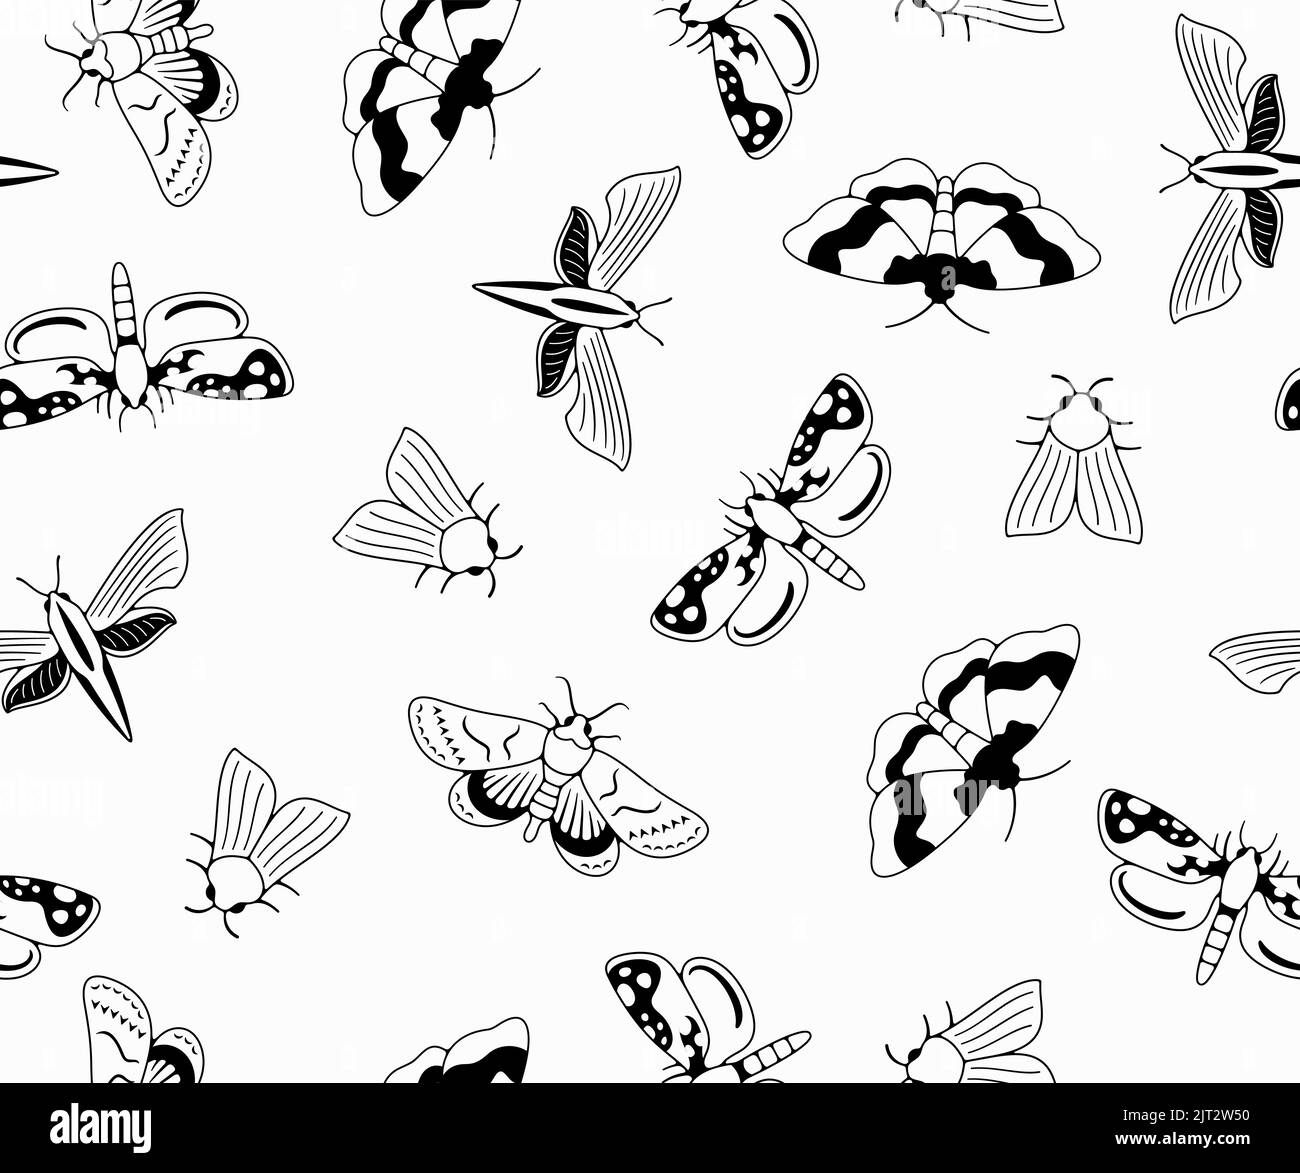 Nachtaktive Motte, Schmetterlinge und Motten, nahtloser Vektorhintergrund in Umriss, Muster. Fliegende Insekten, Natur, Entomologie und Entomologie, Tapete Stock Vektor